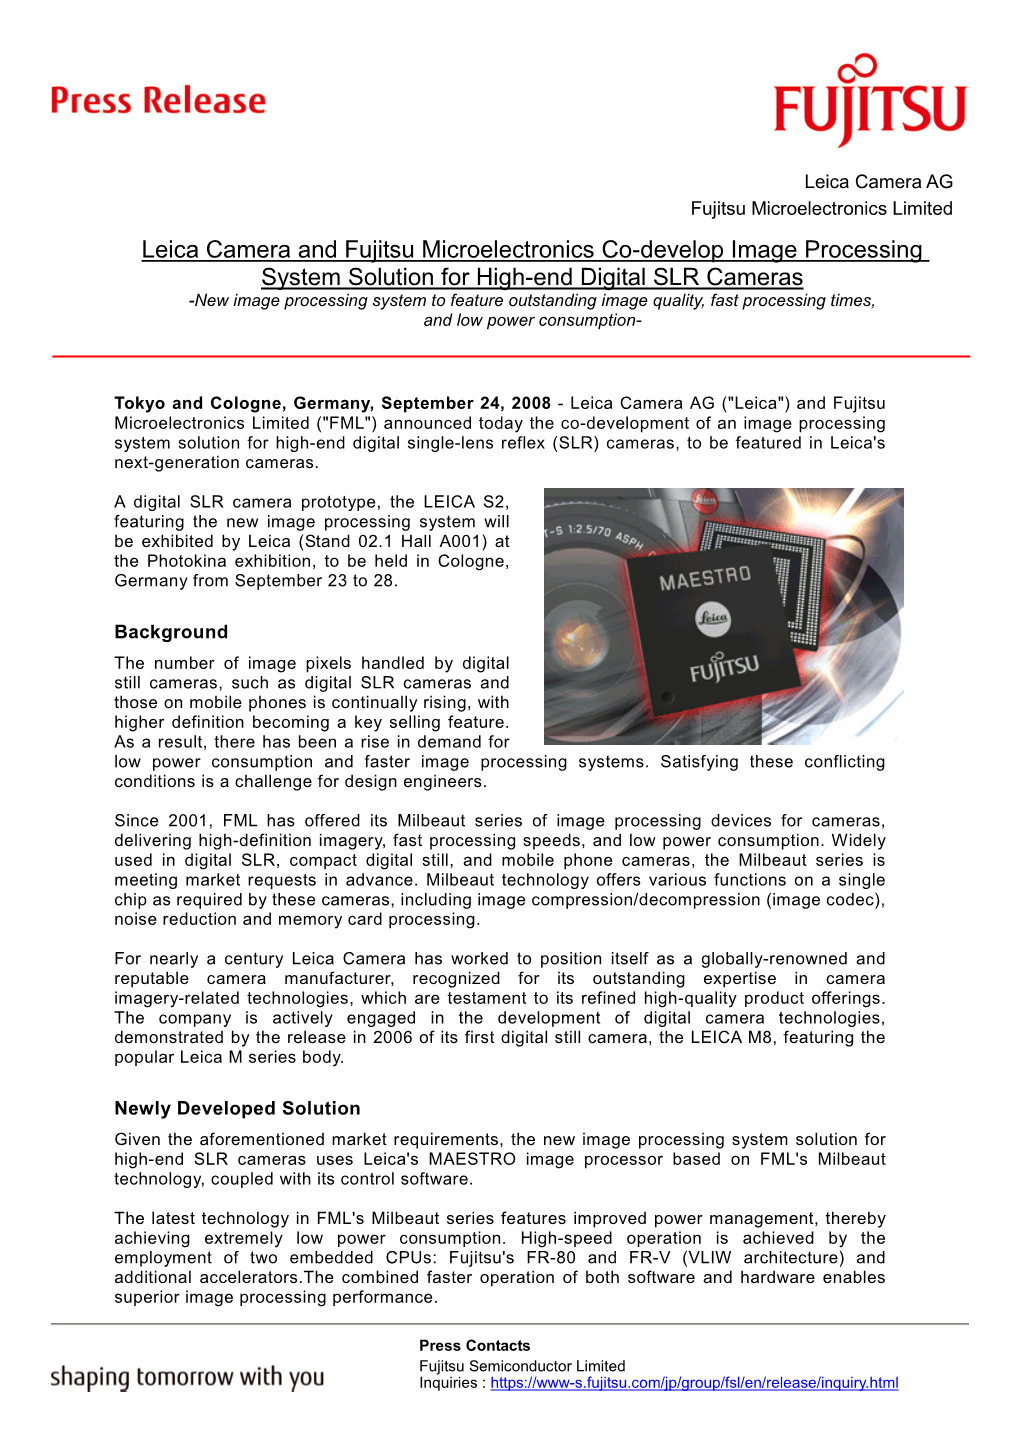 Fujitsu Semiconductor Press Release 2008/09/24